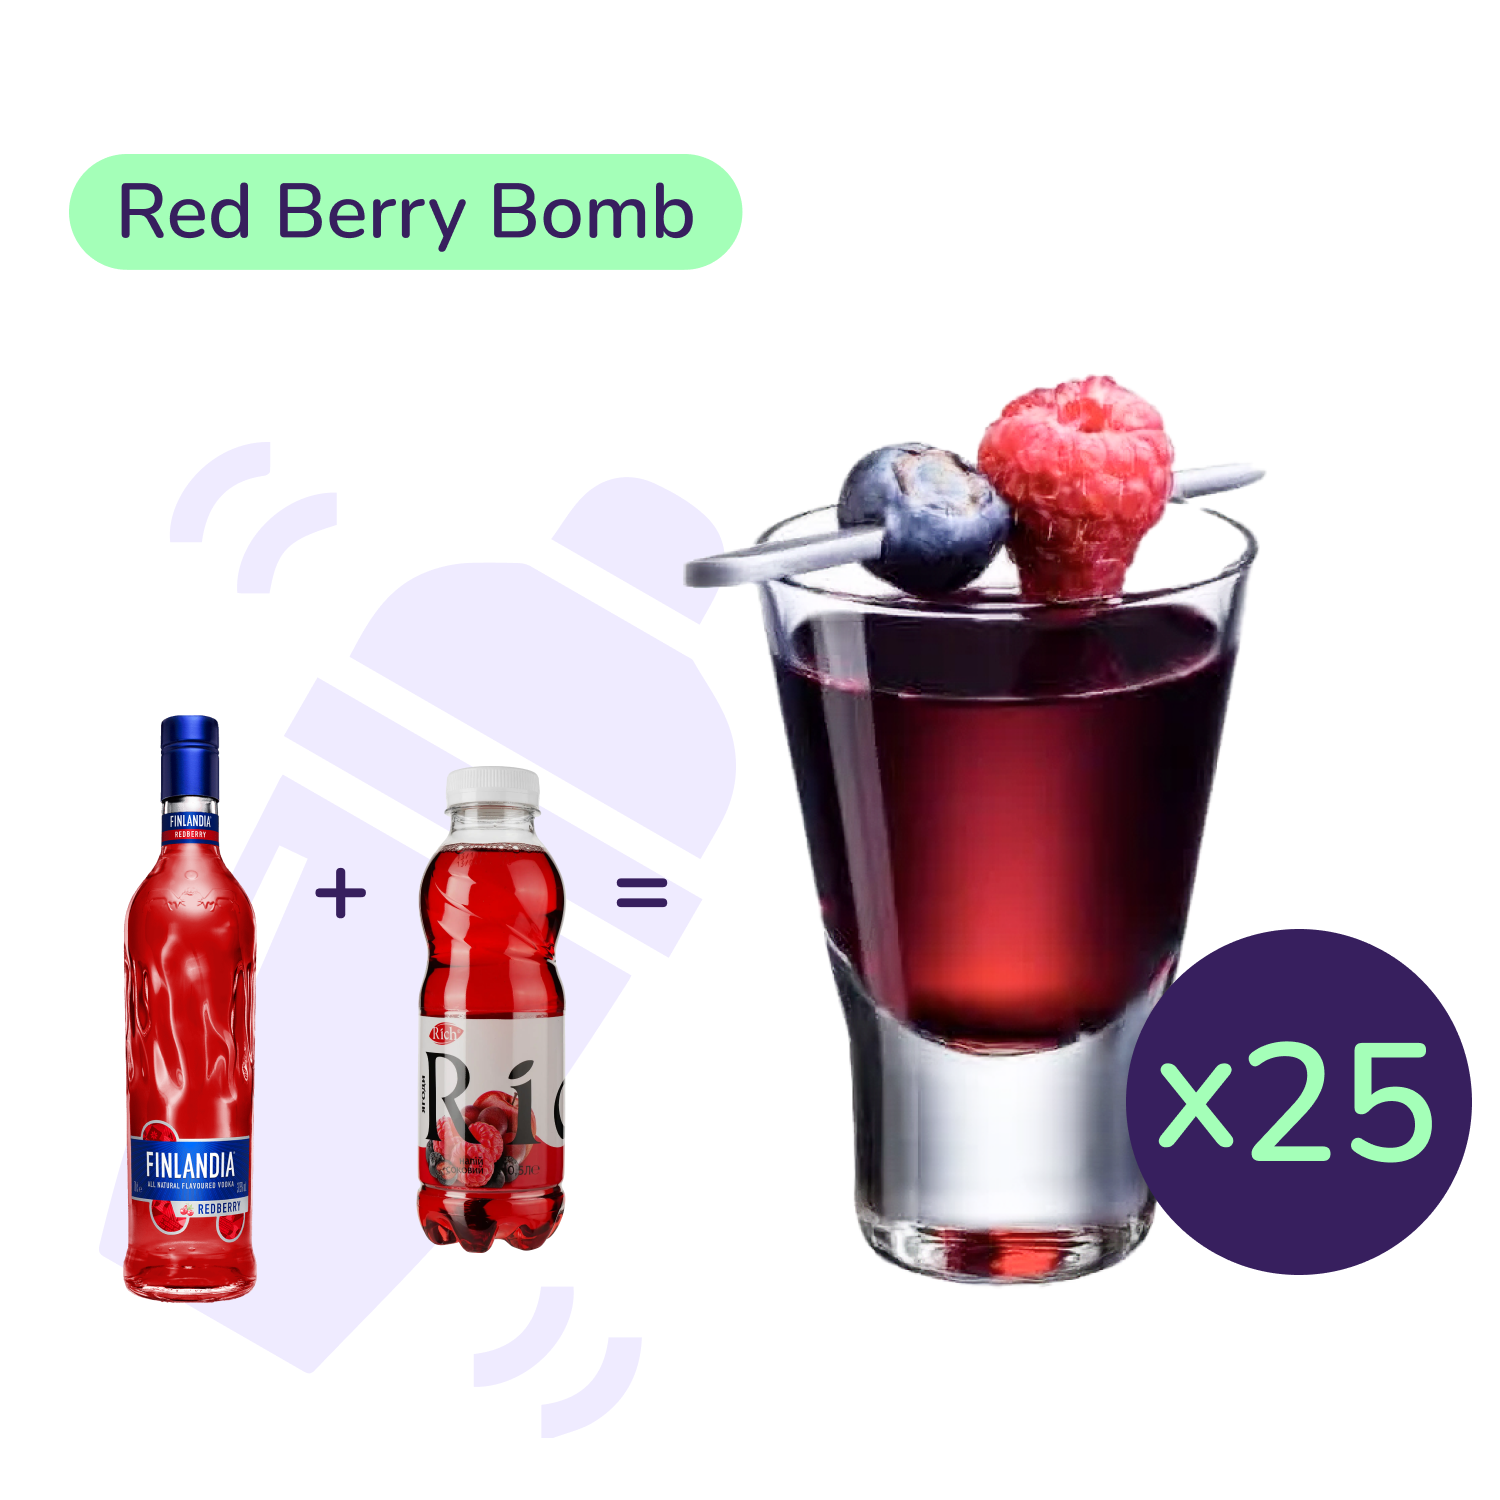 Коктейль Red Berry Bomb (набір інгредієнтів) х25 на основі Finlandia - фото 1